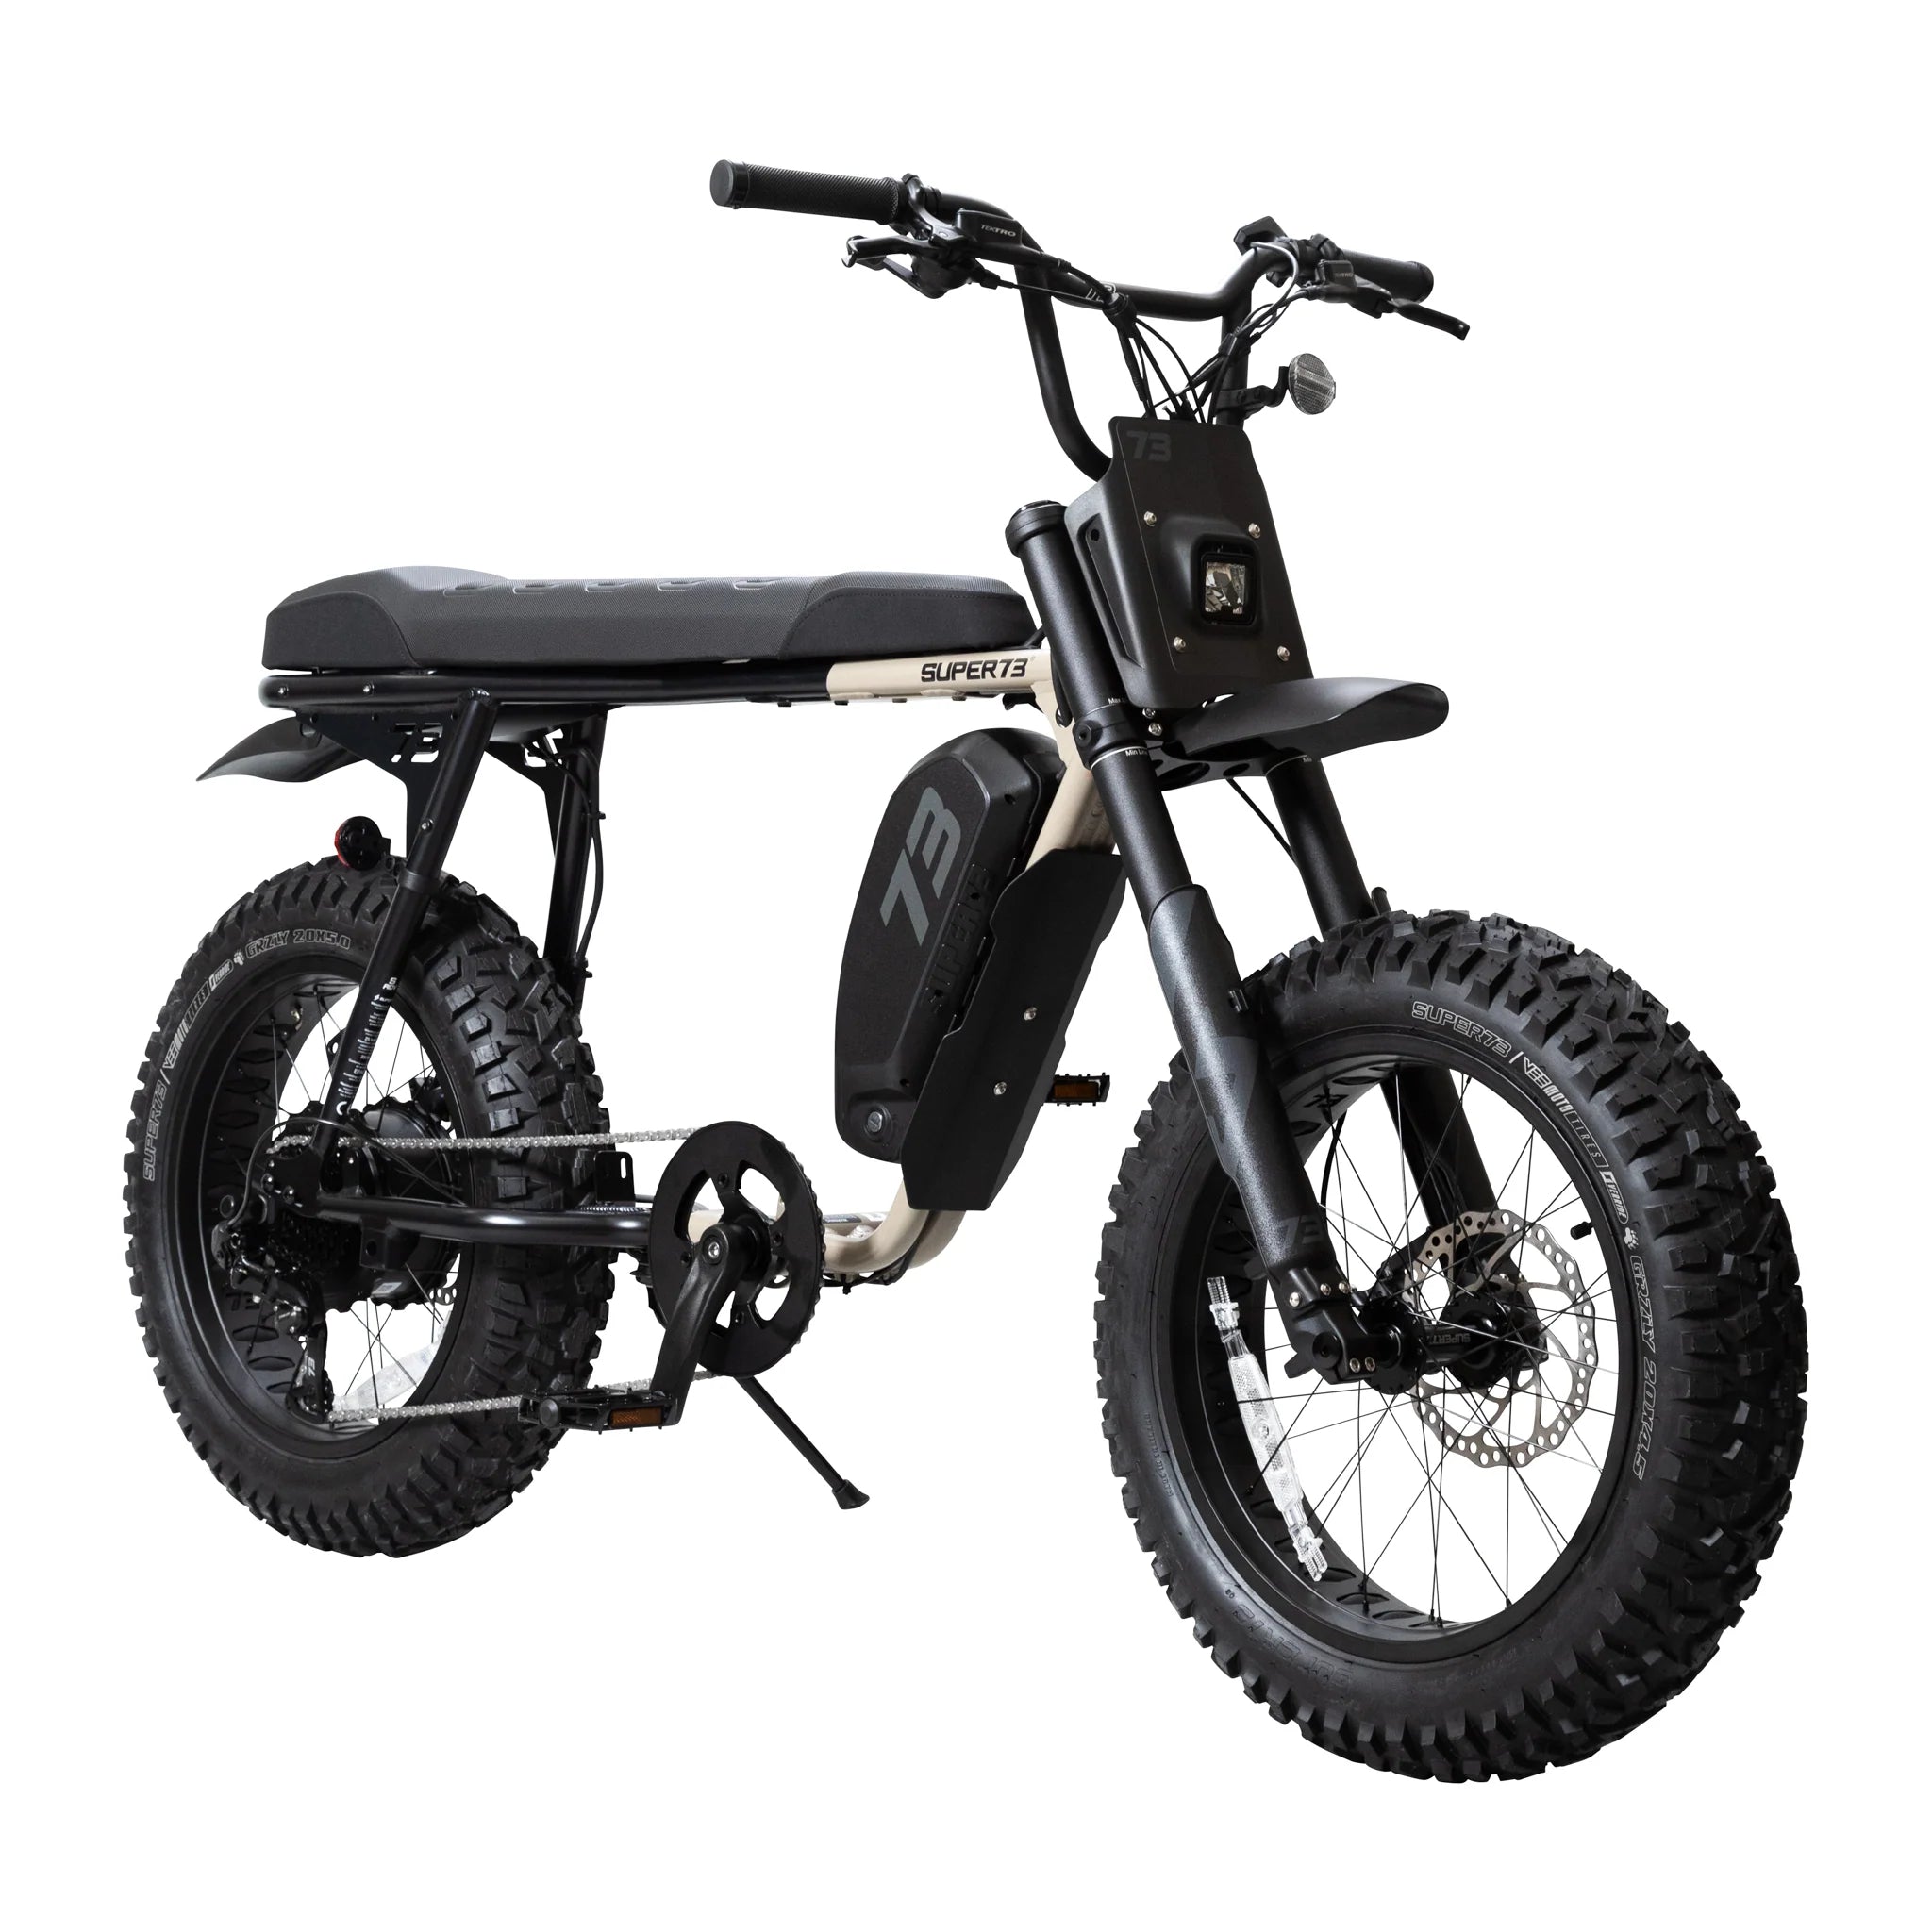 期間限定特価SUPER73 SG 電動アシスト自転車 送料込み e-bike 電動アシスト自転車